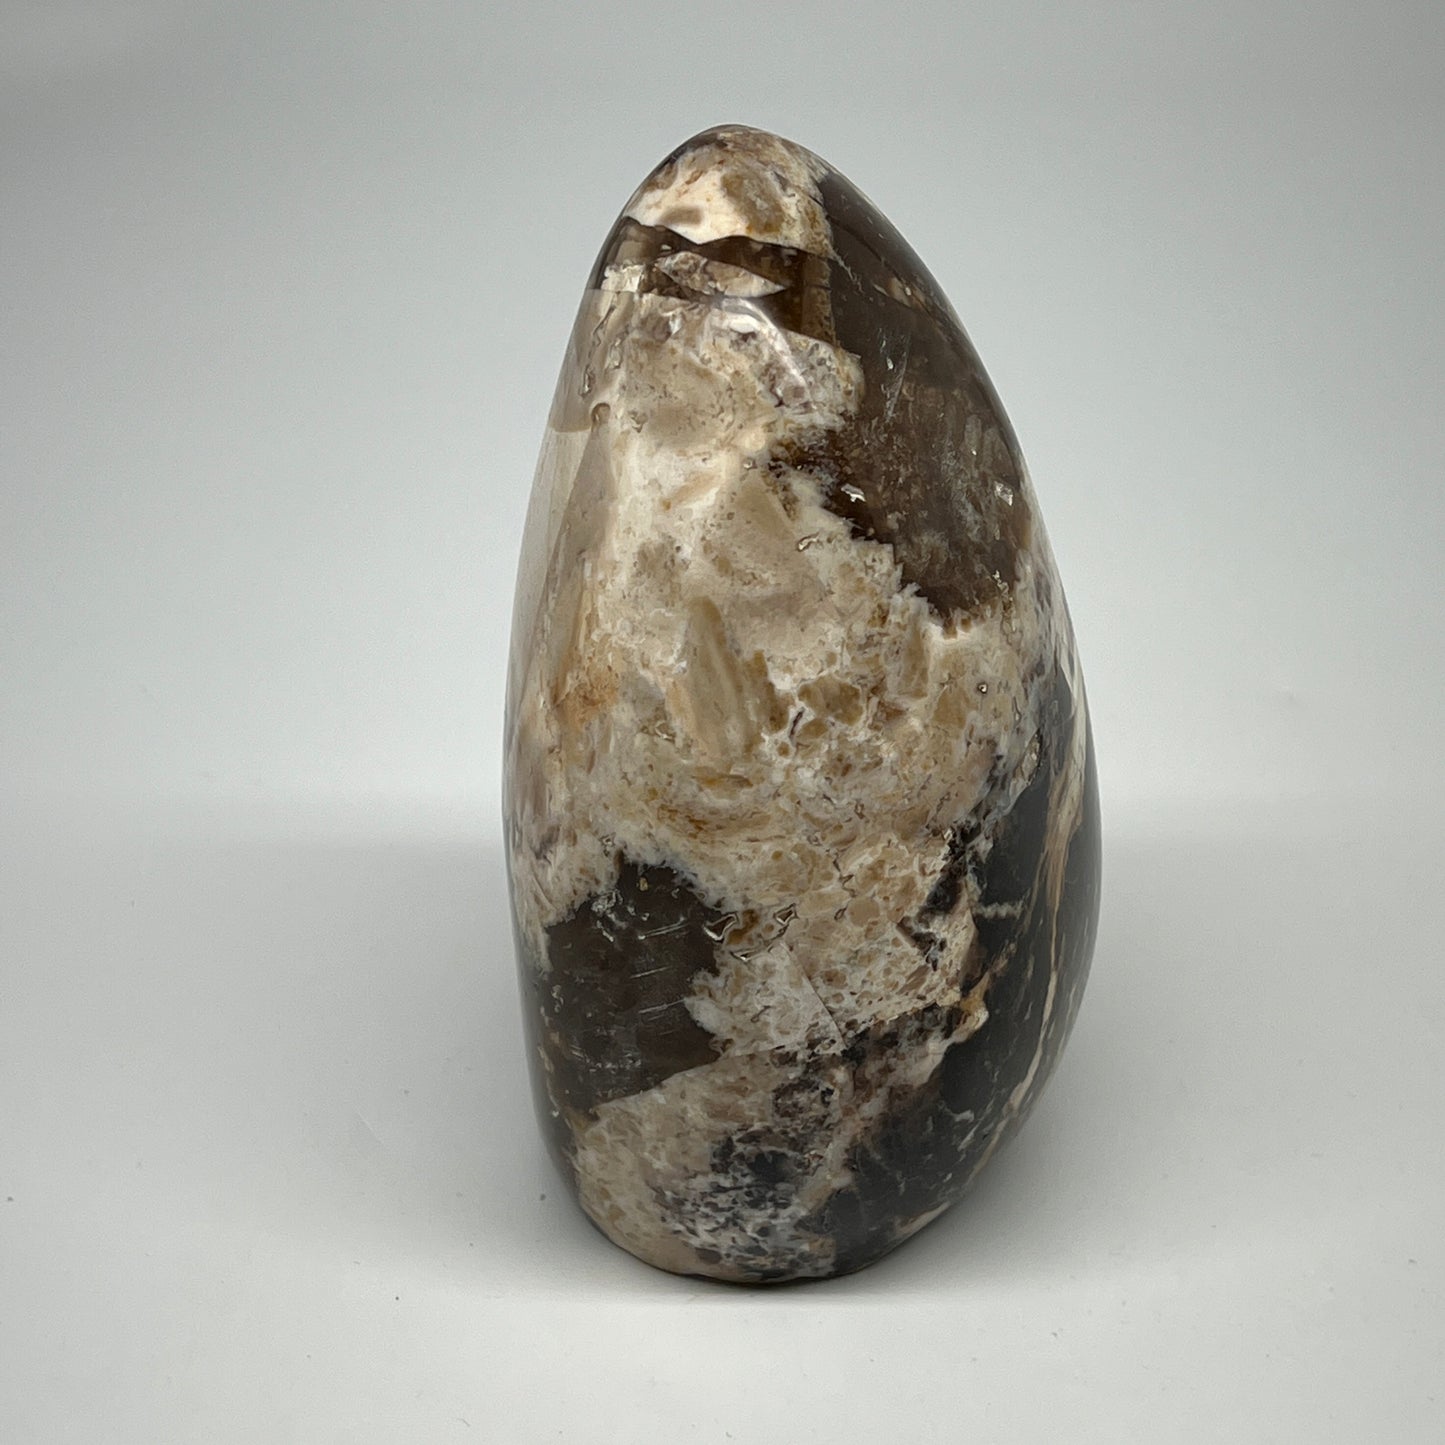 1060g,5.2"x3.4"x2.9" Black Opal Freeform Polished Gemstone @Madagascar,B21056